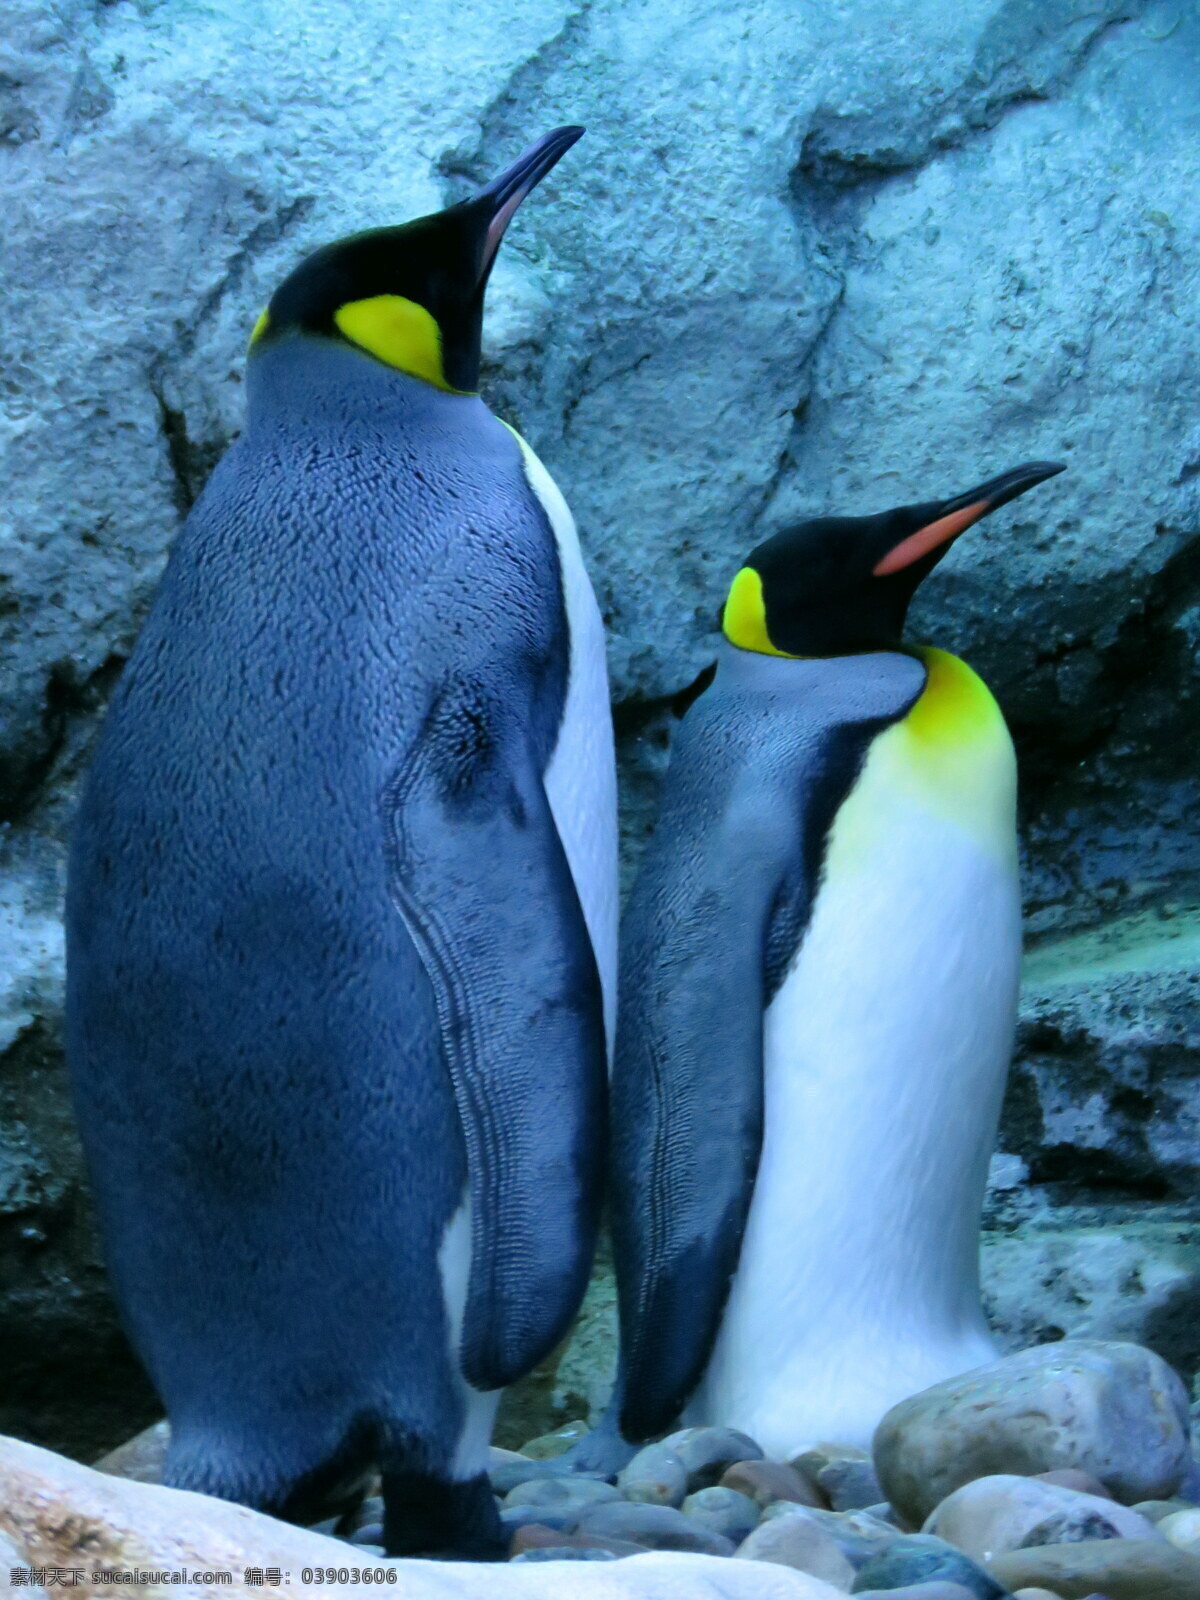 肥 企鹅 高清 肥企鹅 大小企鹅 南极企鹅 野生动物